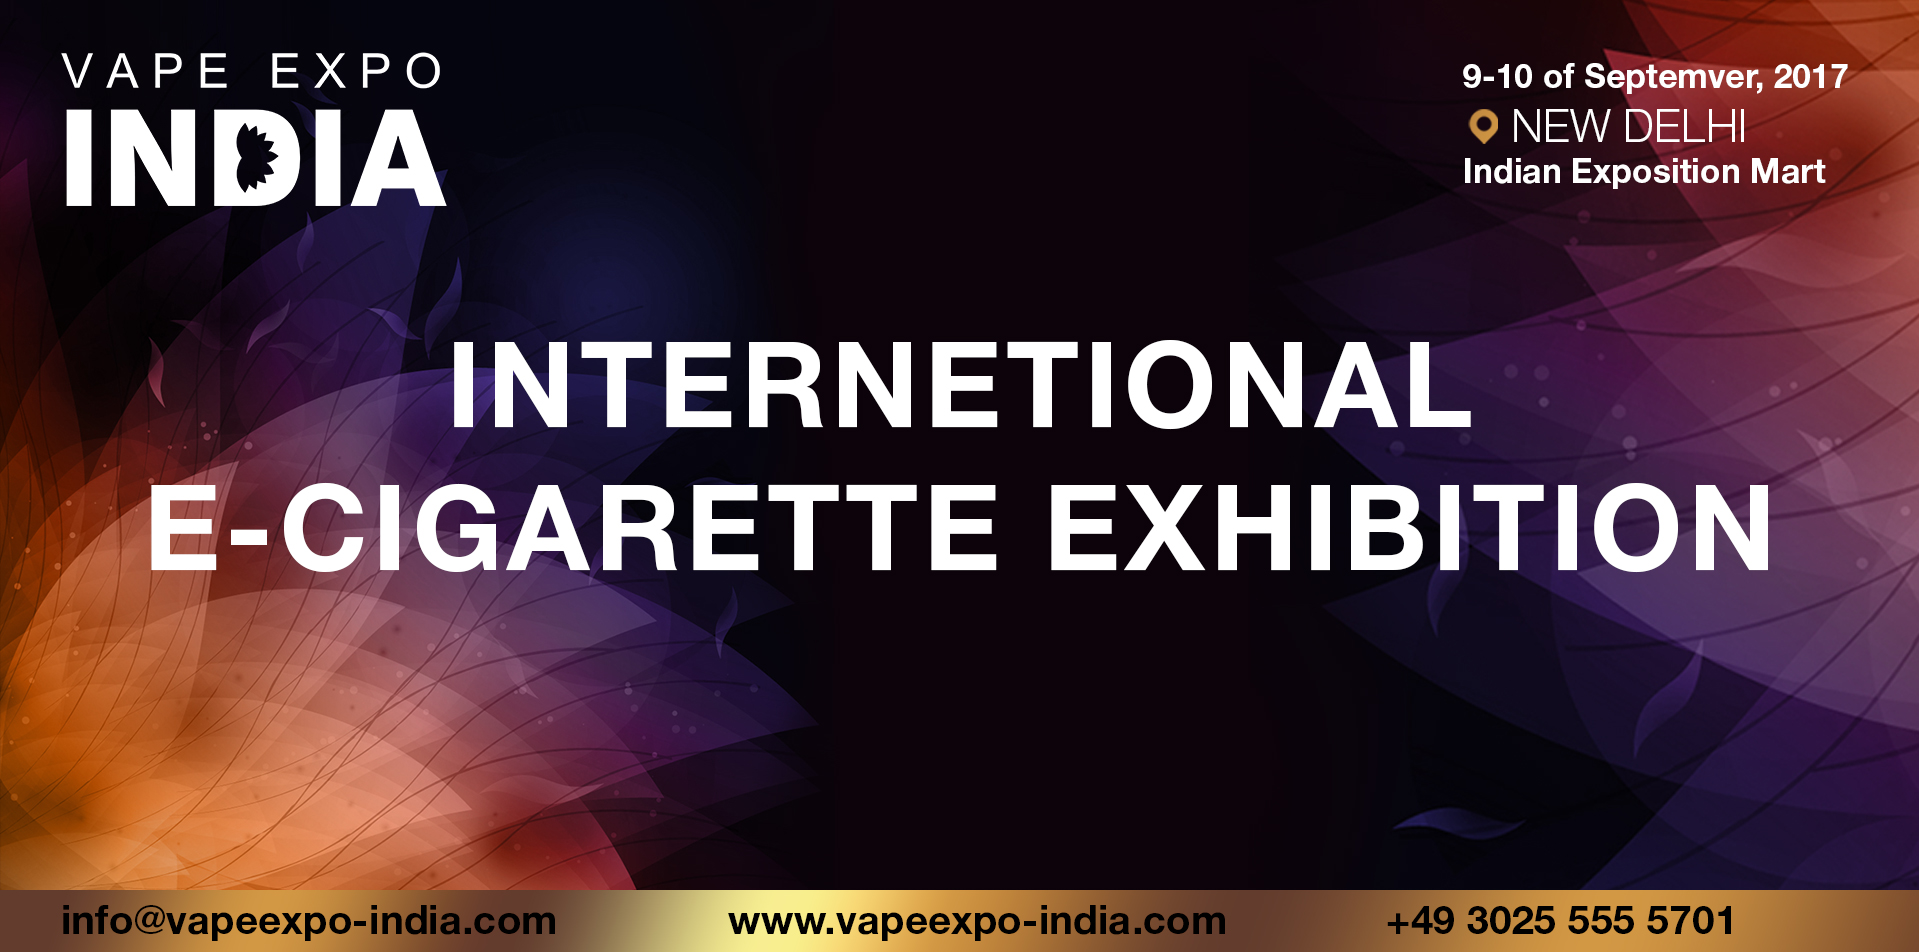 Vape Expo India